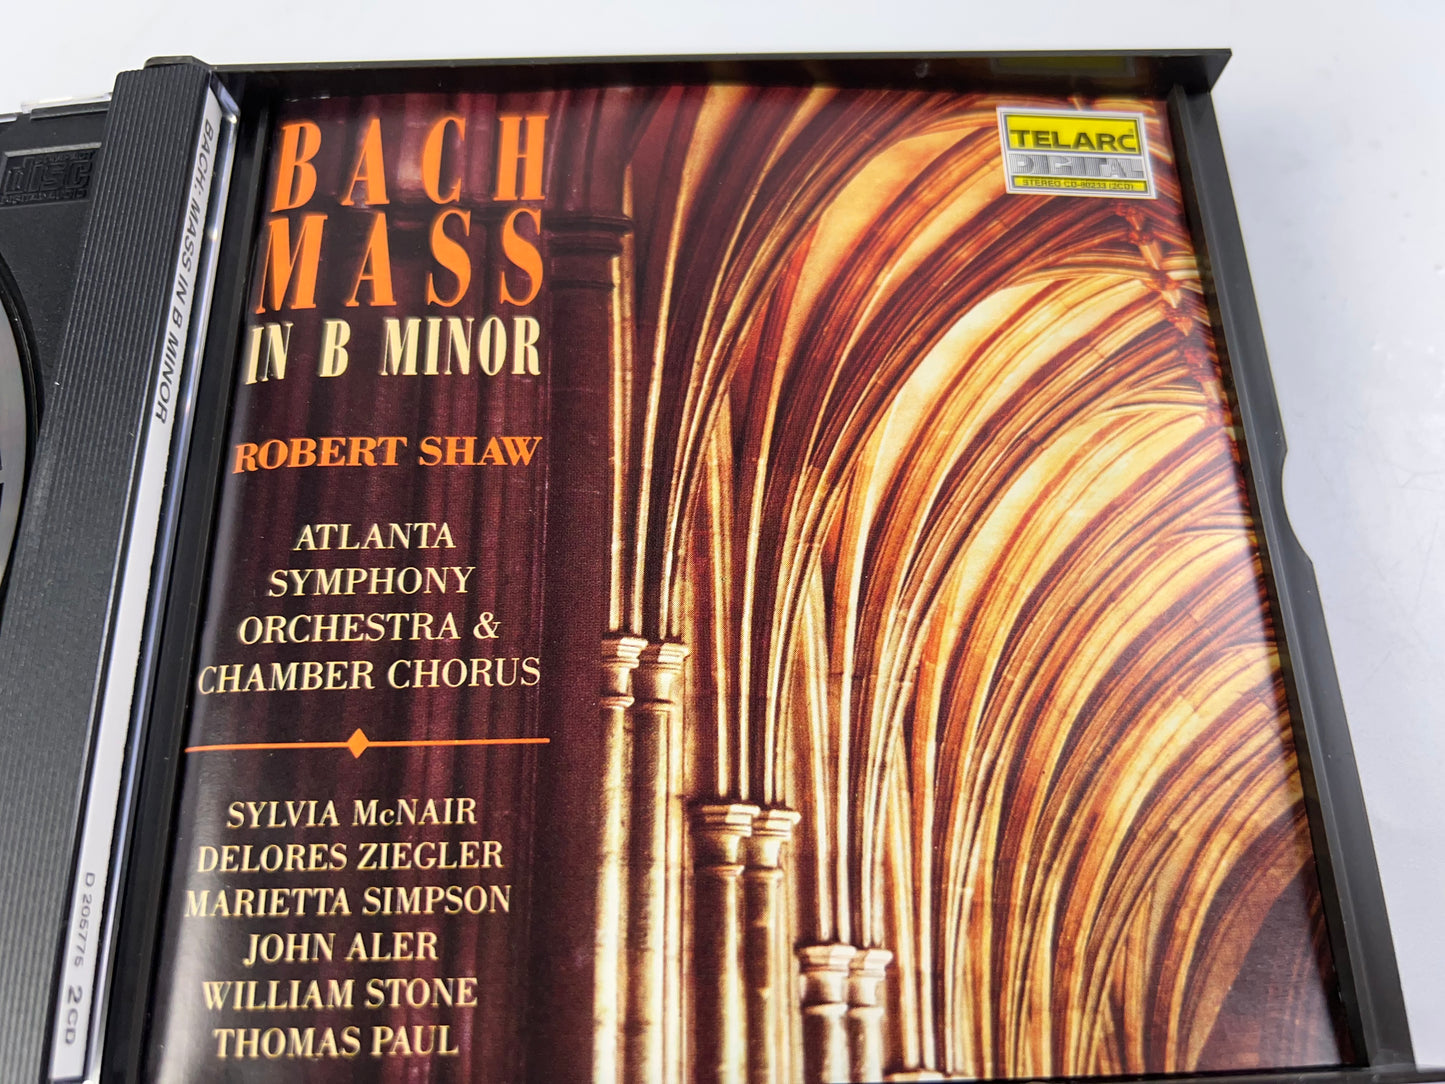 Bach: Mass in B minor - Audio CD By Johann Sebastian Bach